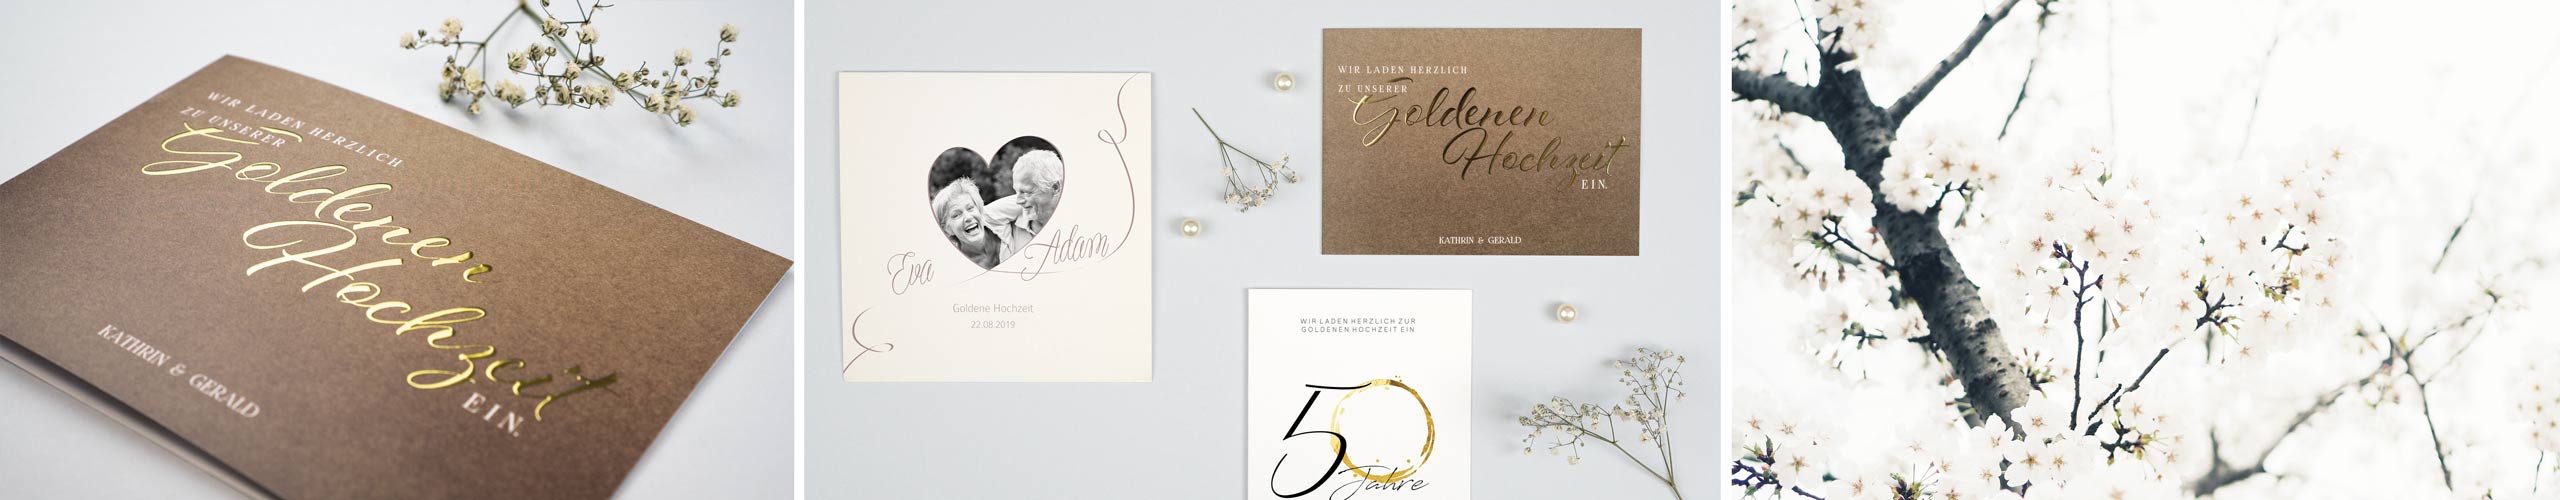 Einladungskarten zur Goldenen Hochzeit